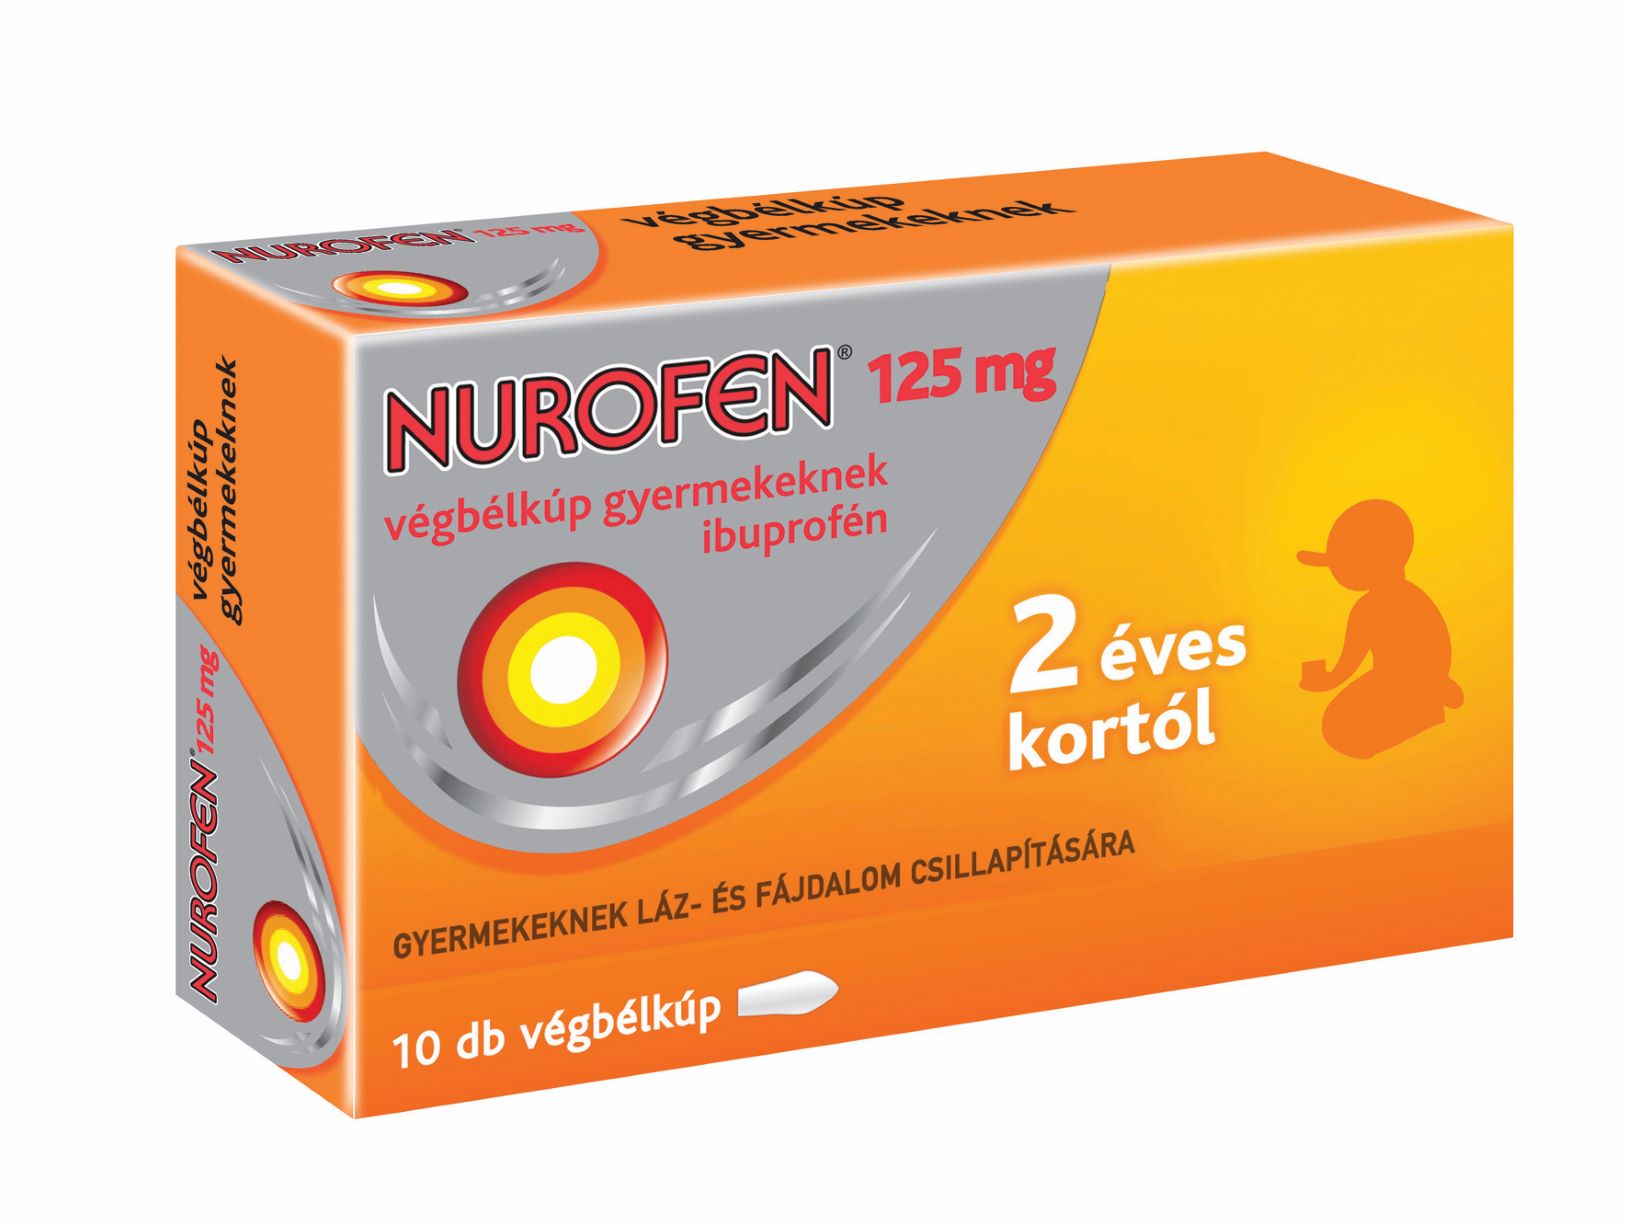 Nurofen 125 mg végbélkúp gyermekeknek